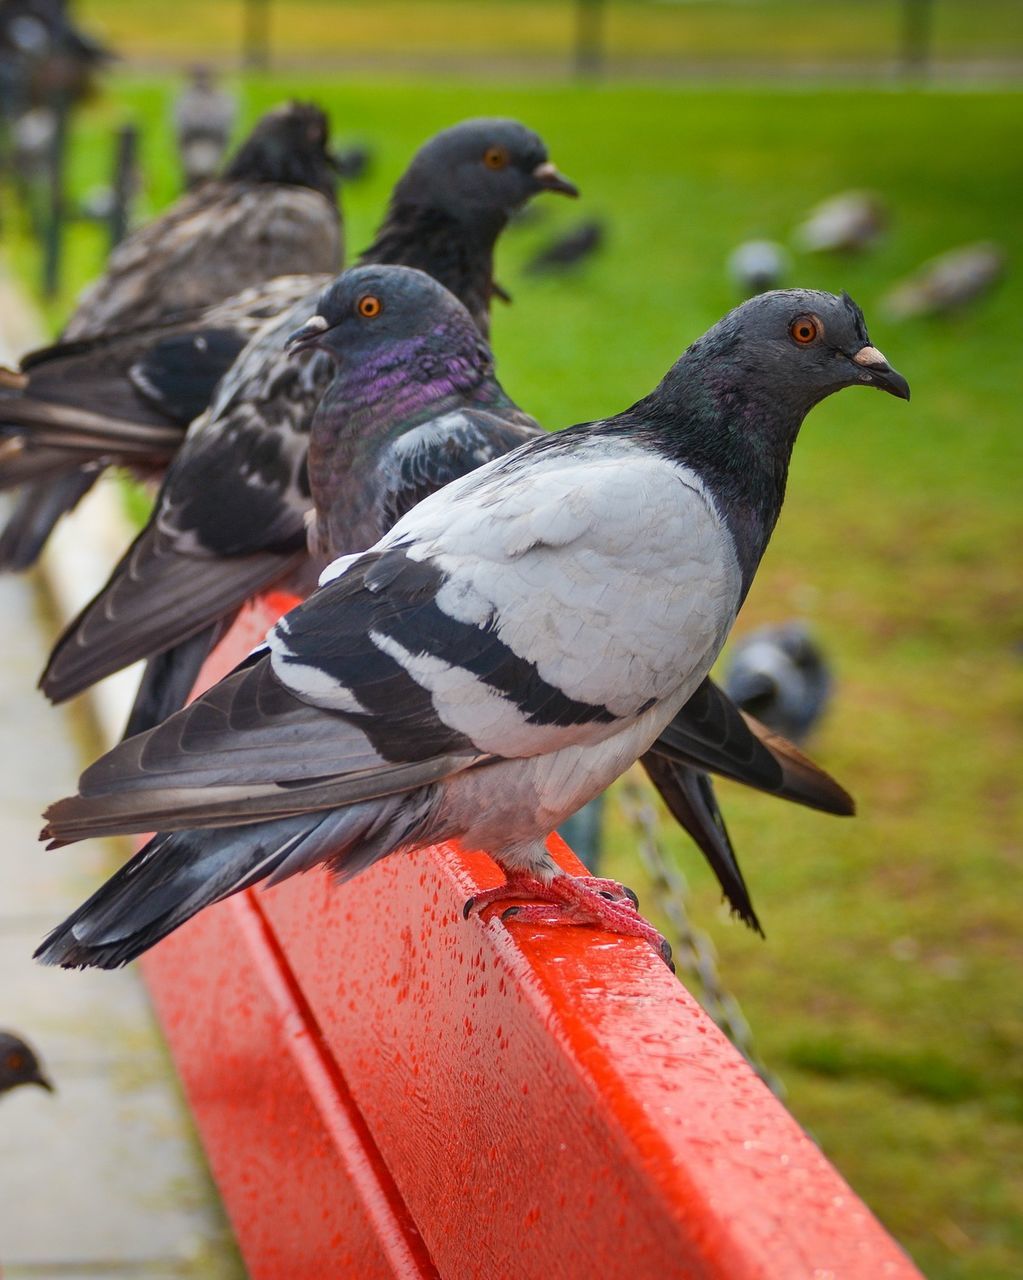 Pigeon perching on wet metal